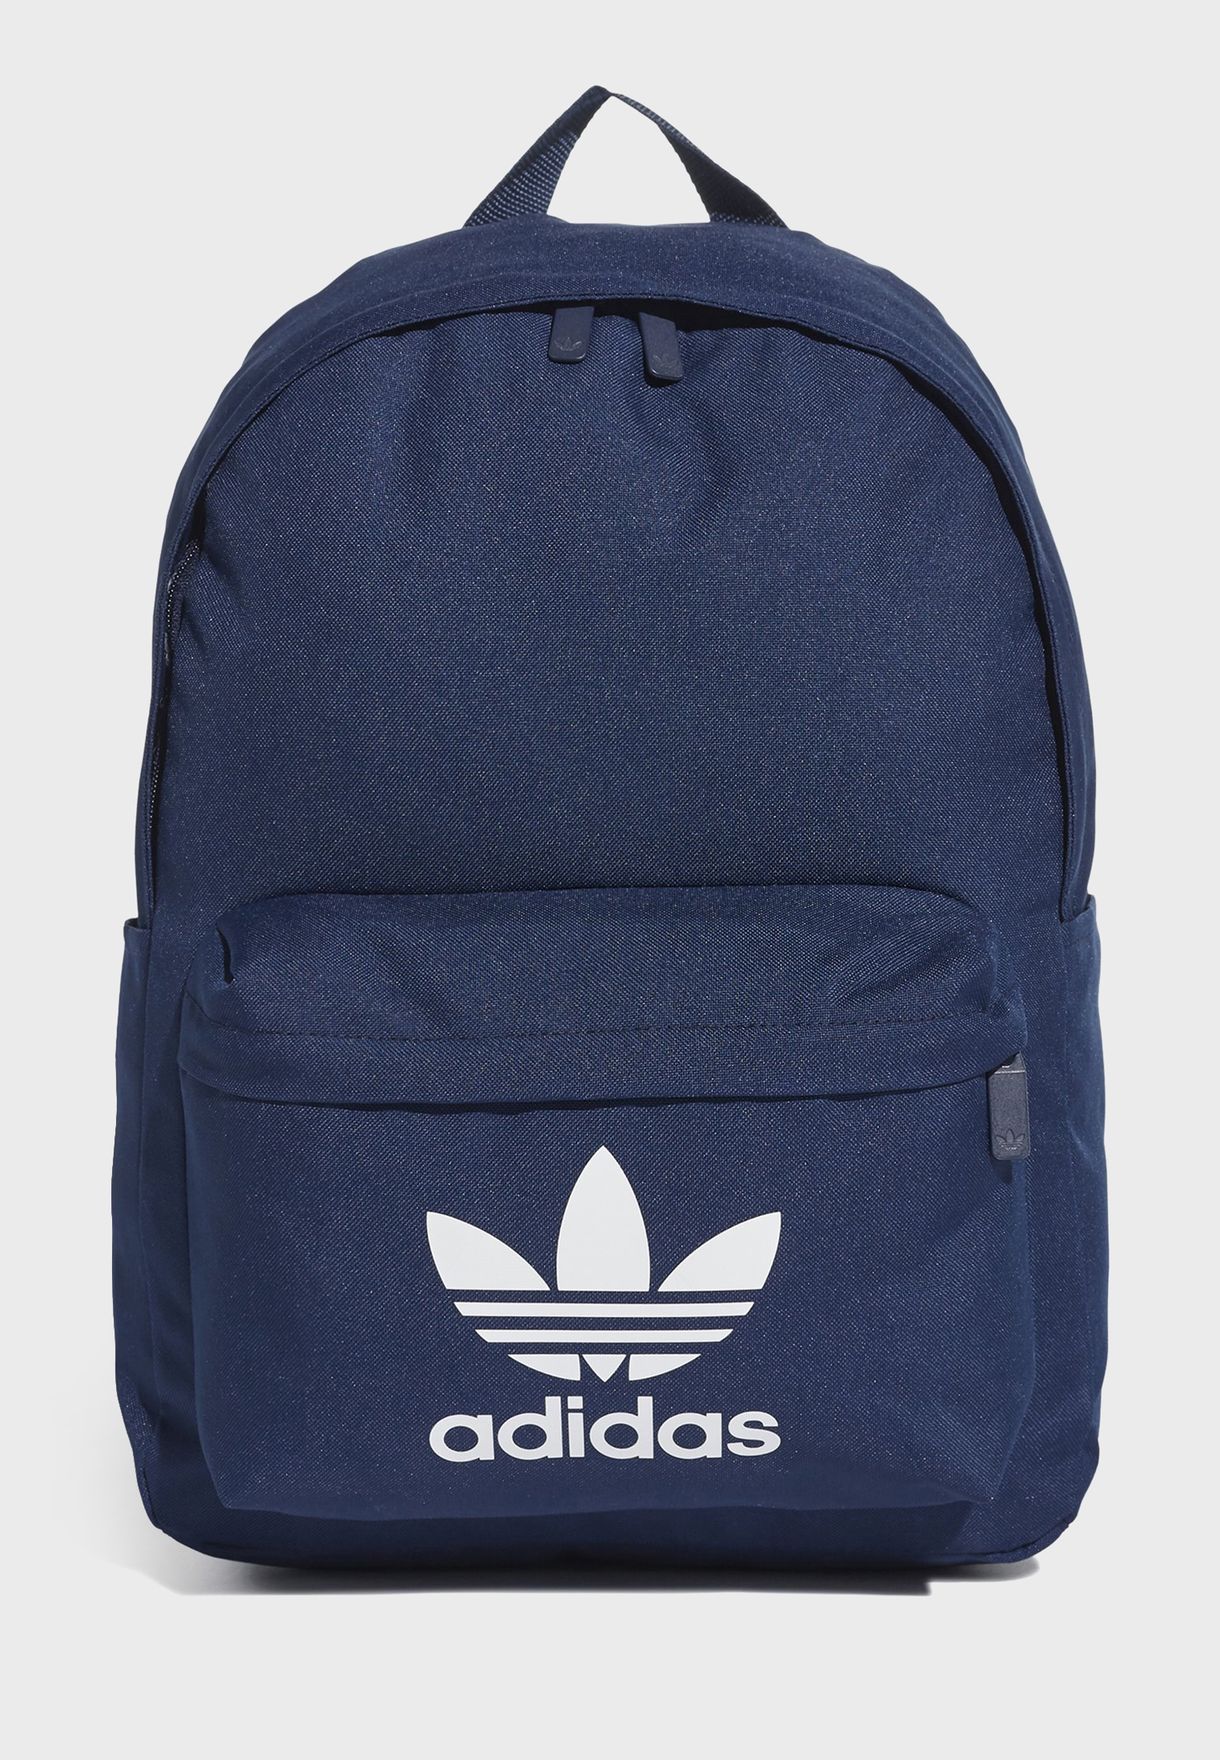 adidas unisex navy backpack